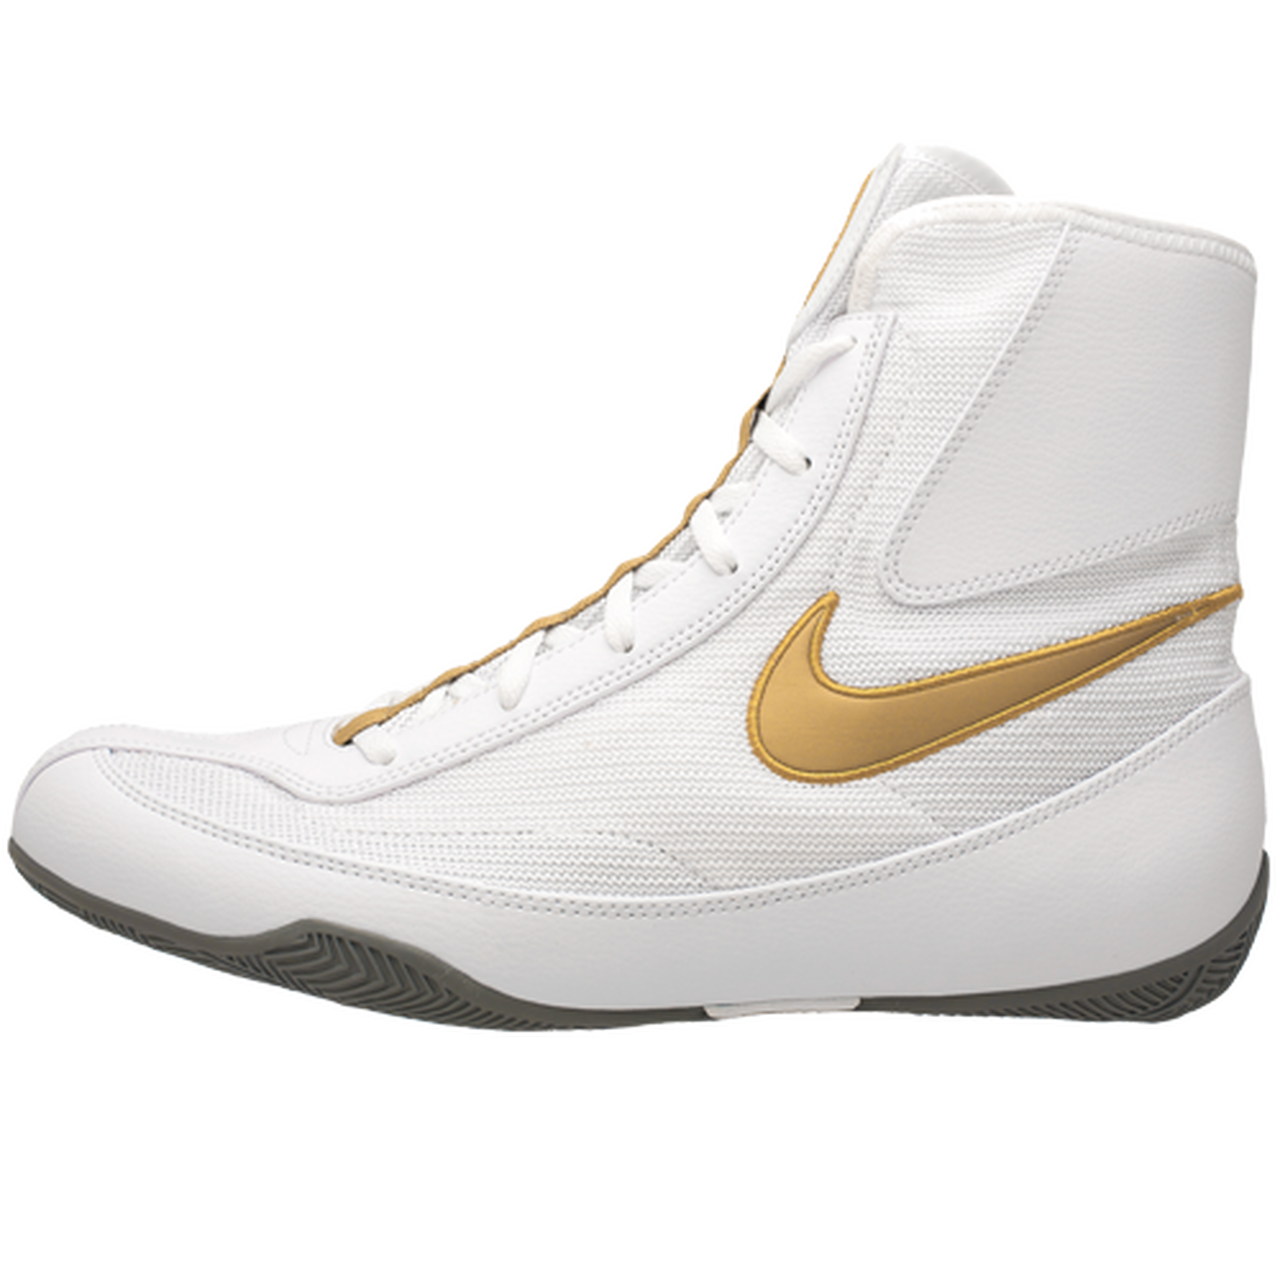 Nike Machomai 2 - White/Gold - Athlete 